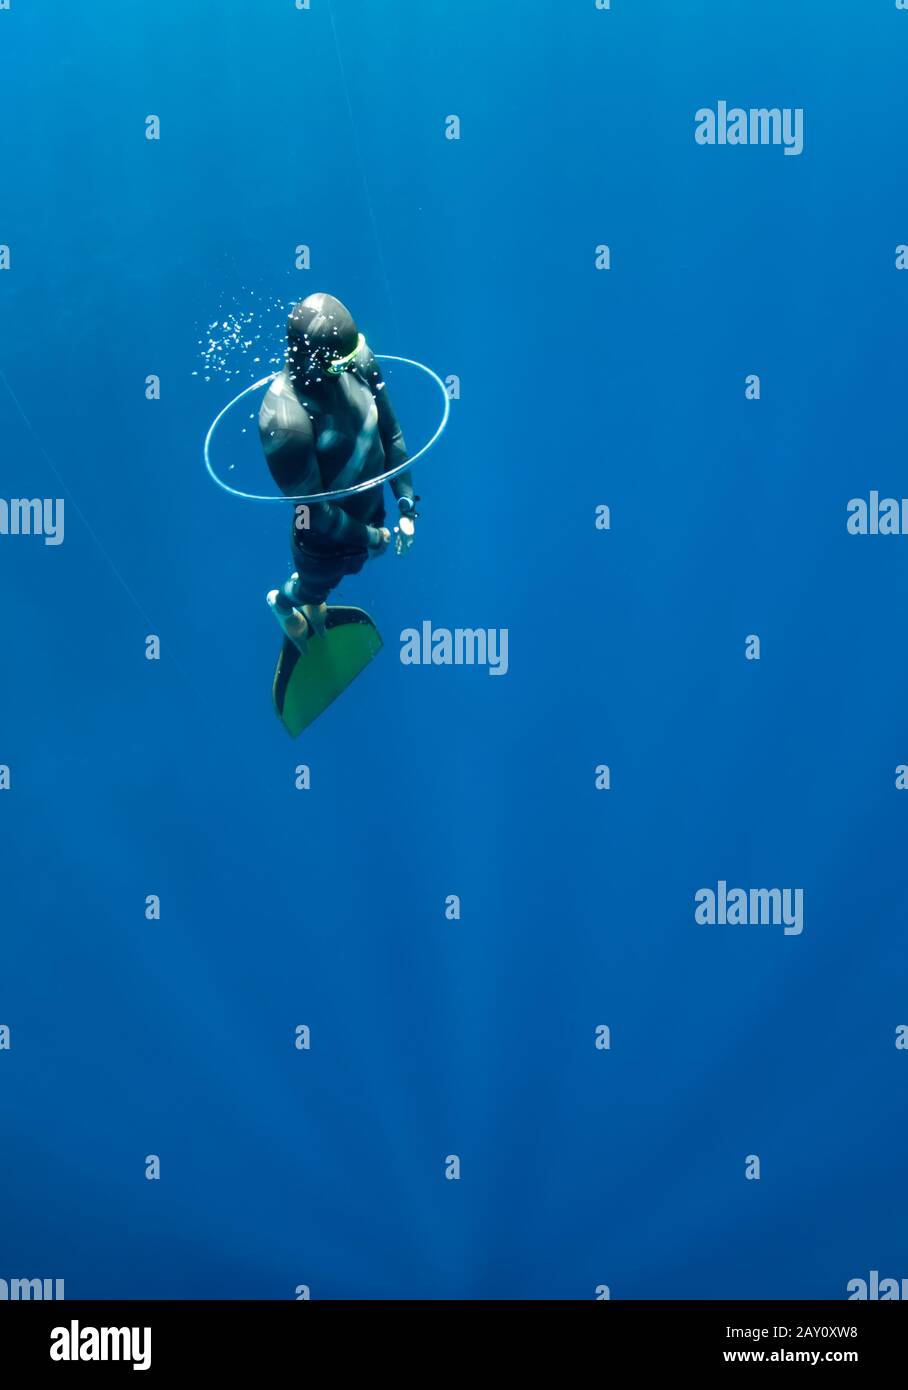 Freediver tries to swim through the bubble air rin Stock Photo